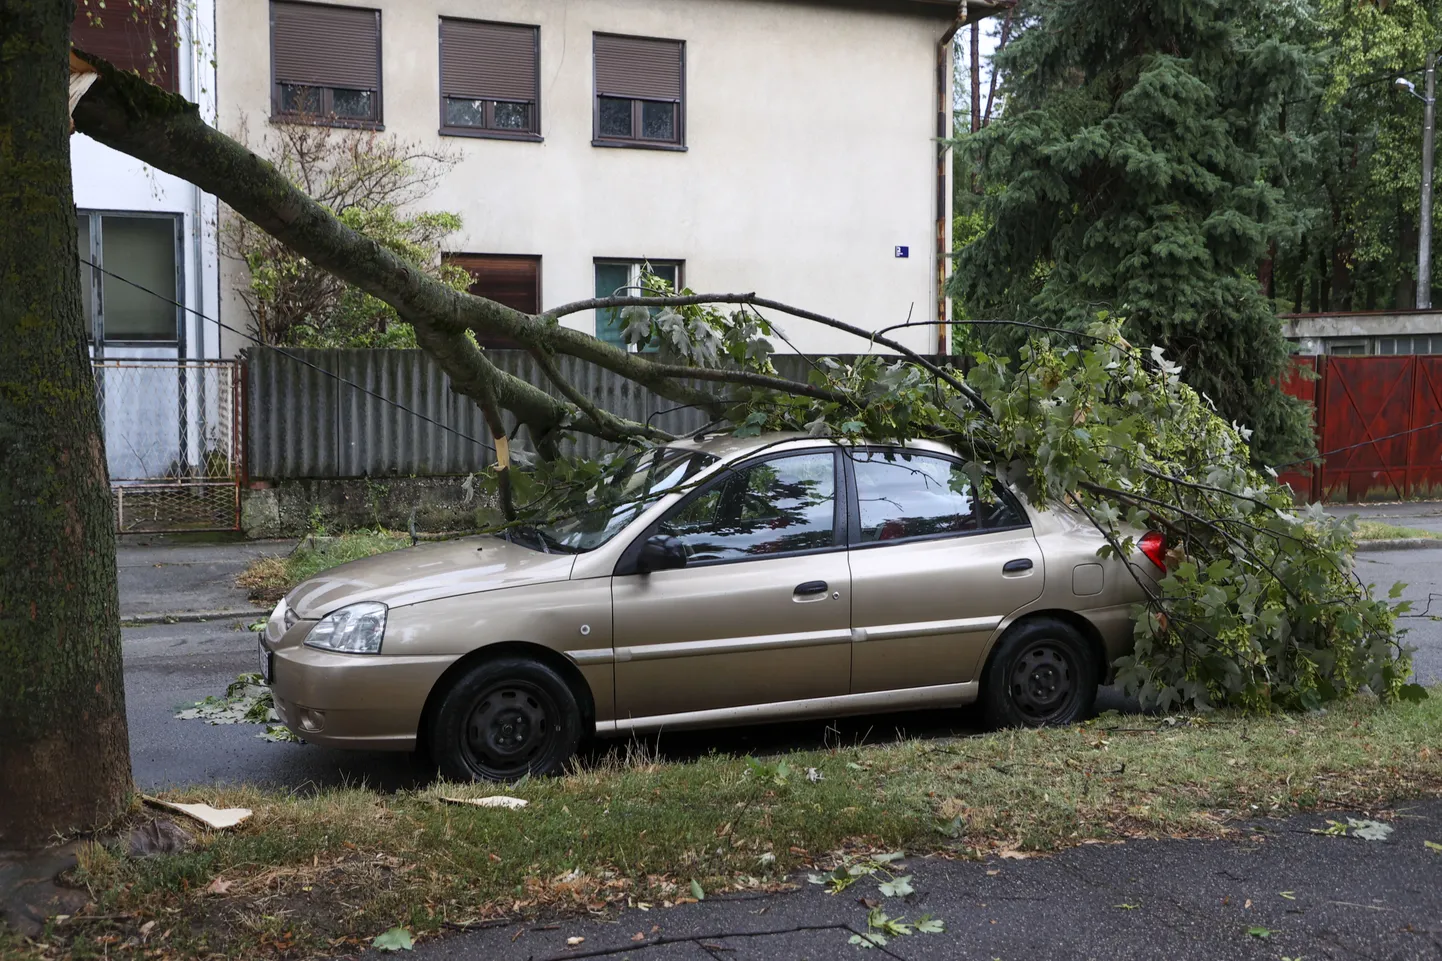 Tormi ajal sõidukile langenud puu Zagrebis.